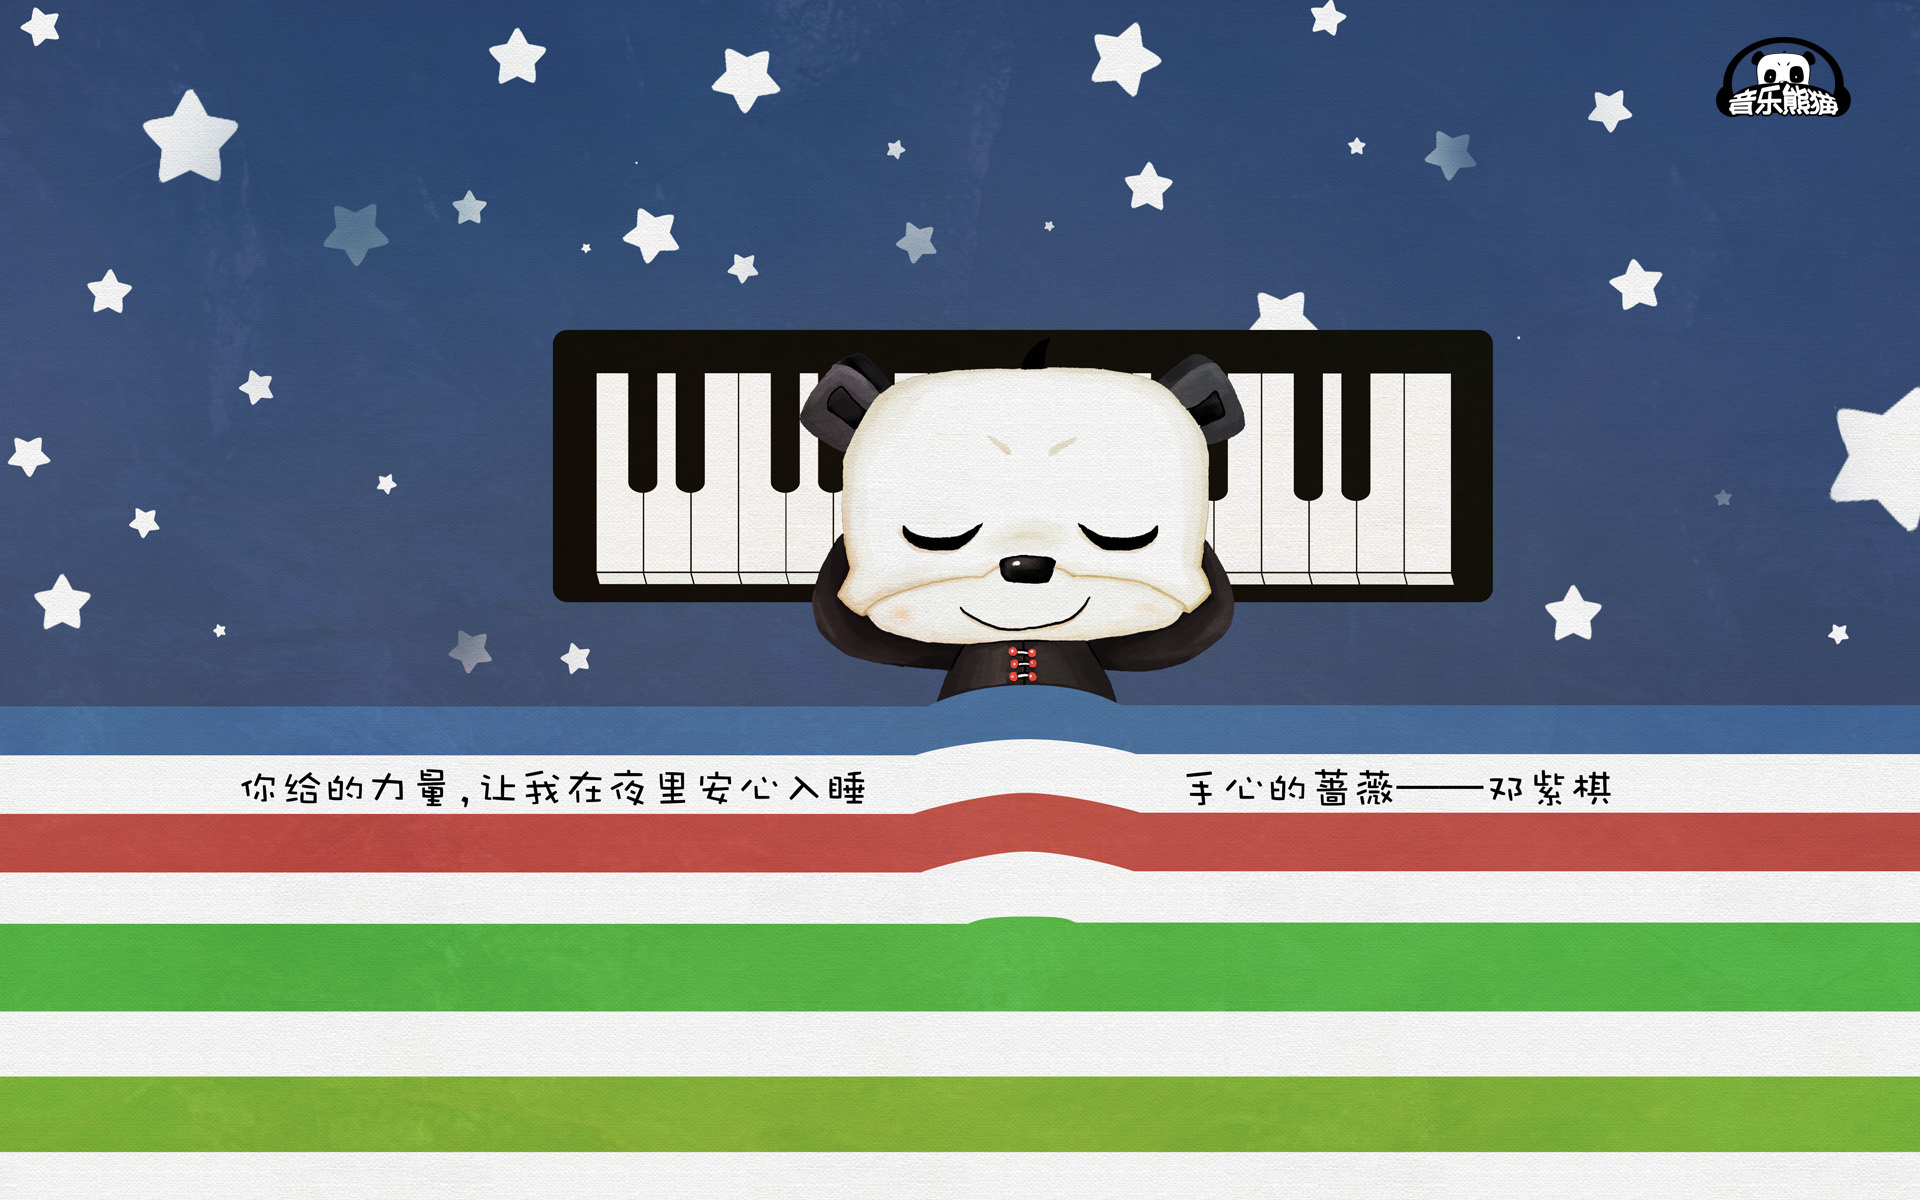 音乐熊猫滚滚 可爱卡通宽屏壁纸(壁纸1)